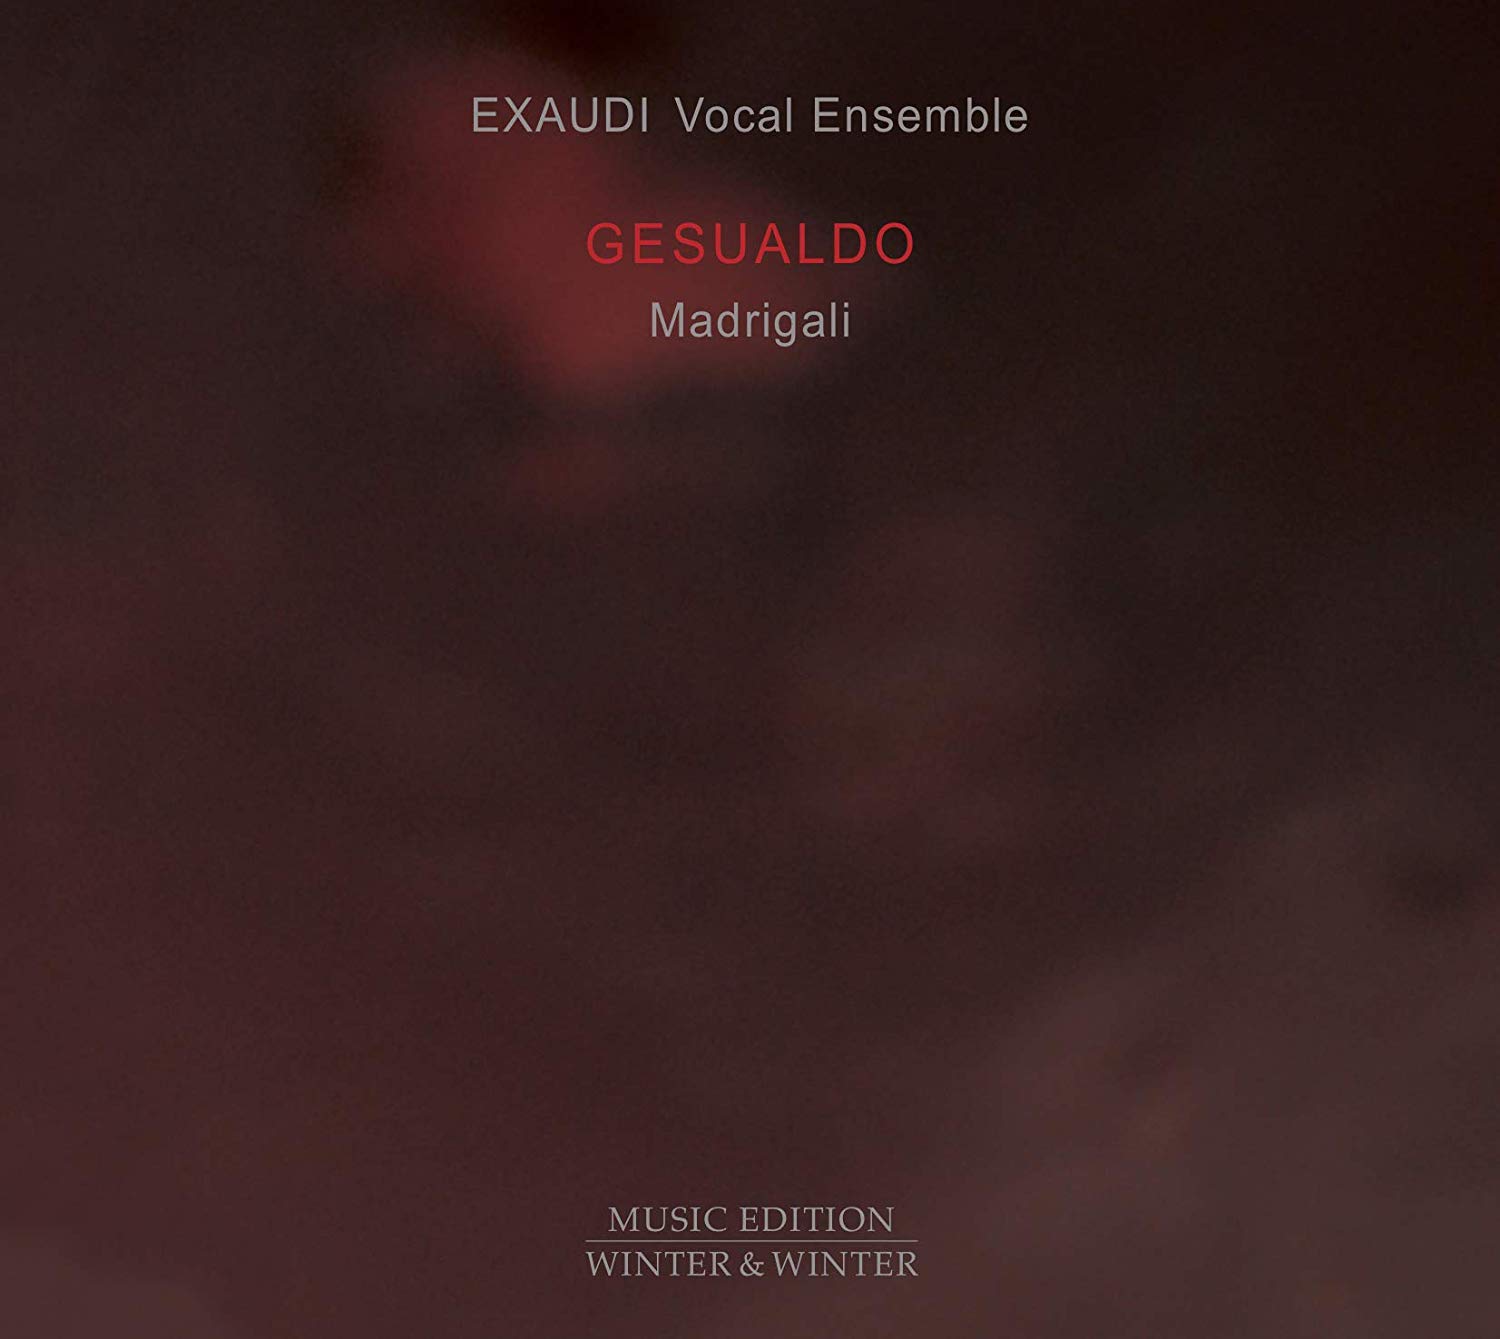 Exaudi Gesualdo madrigals CD cover